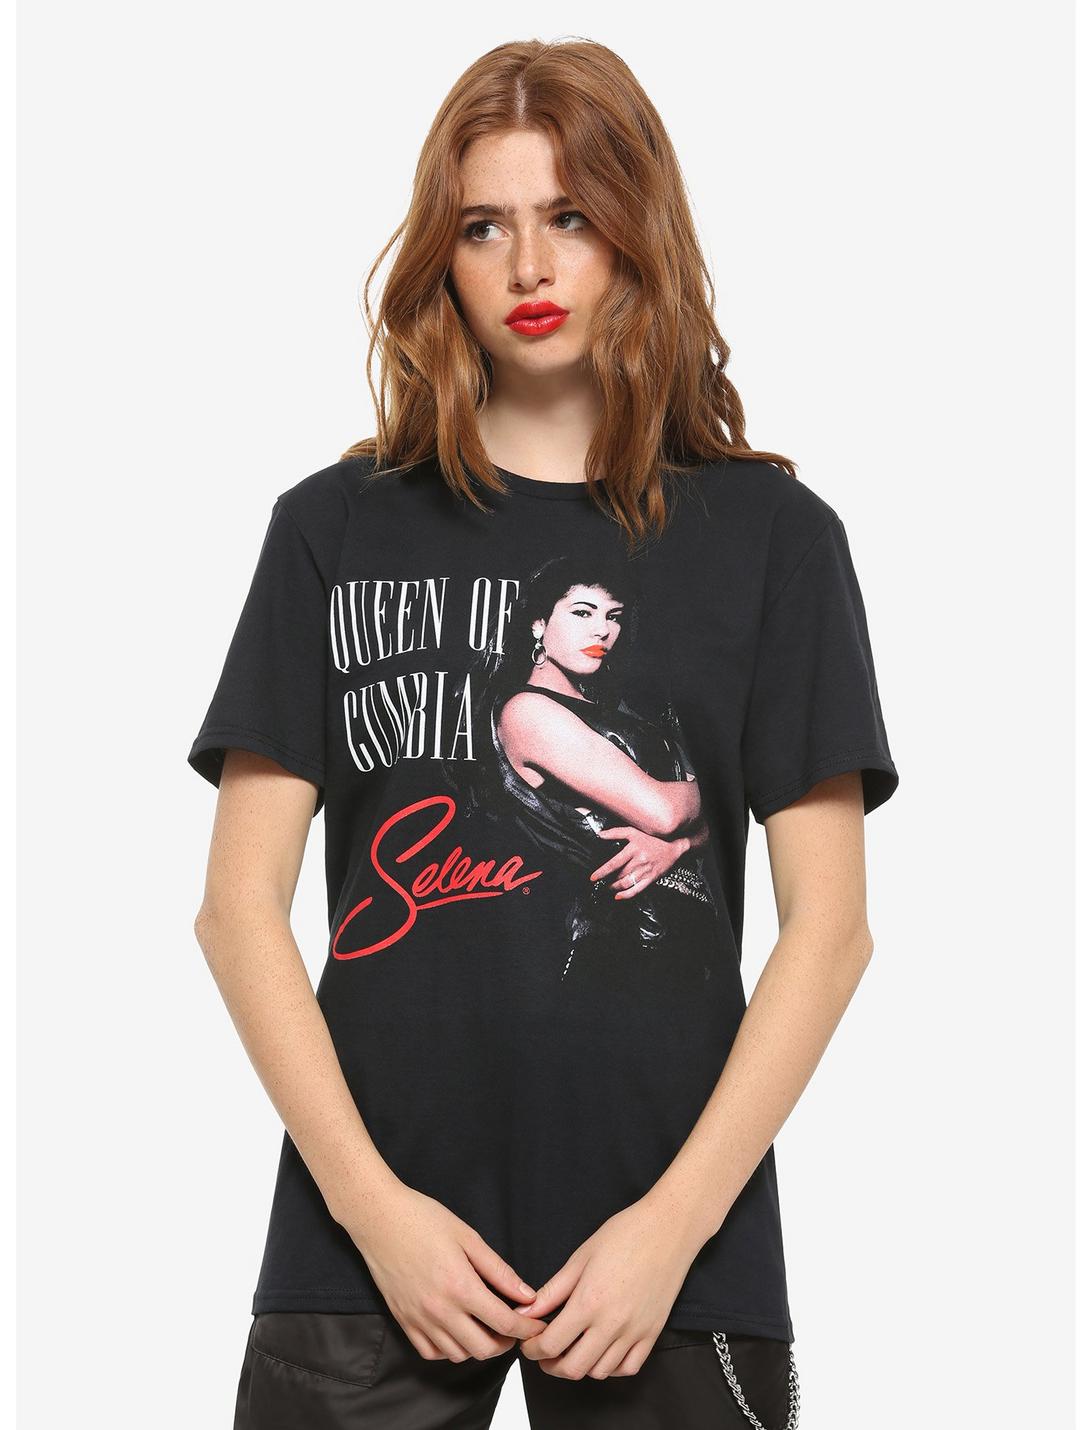 Selena Queen Of Cumbia Girls T-Shirt, BLACK, hi-res